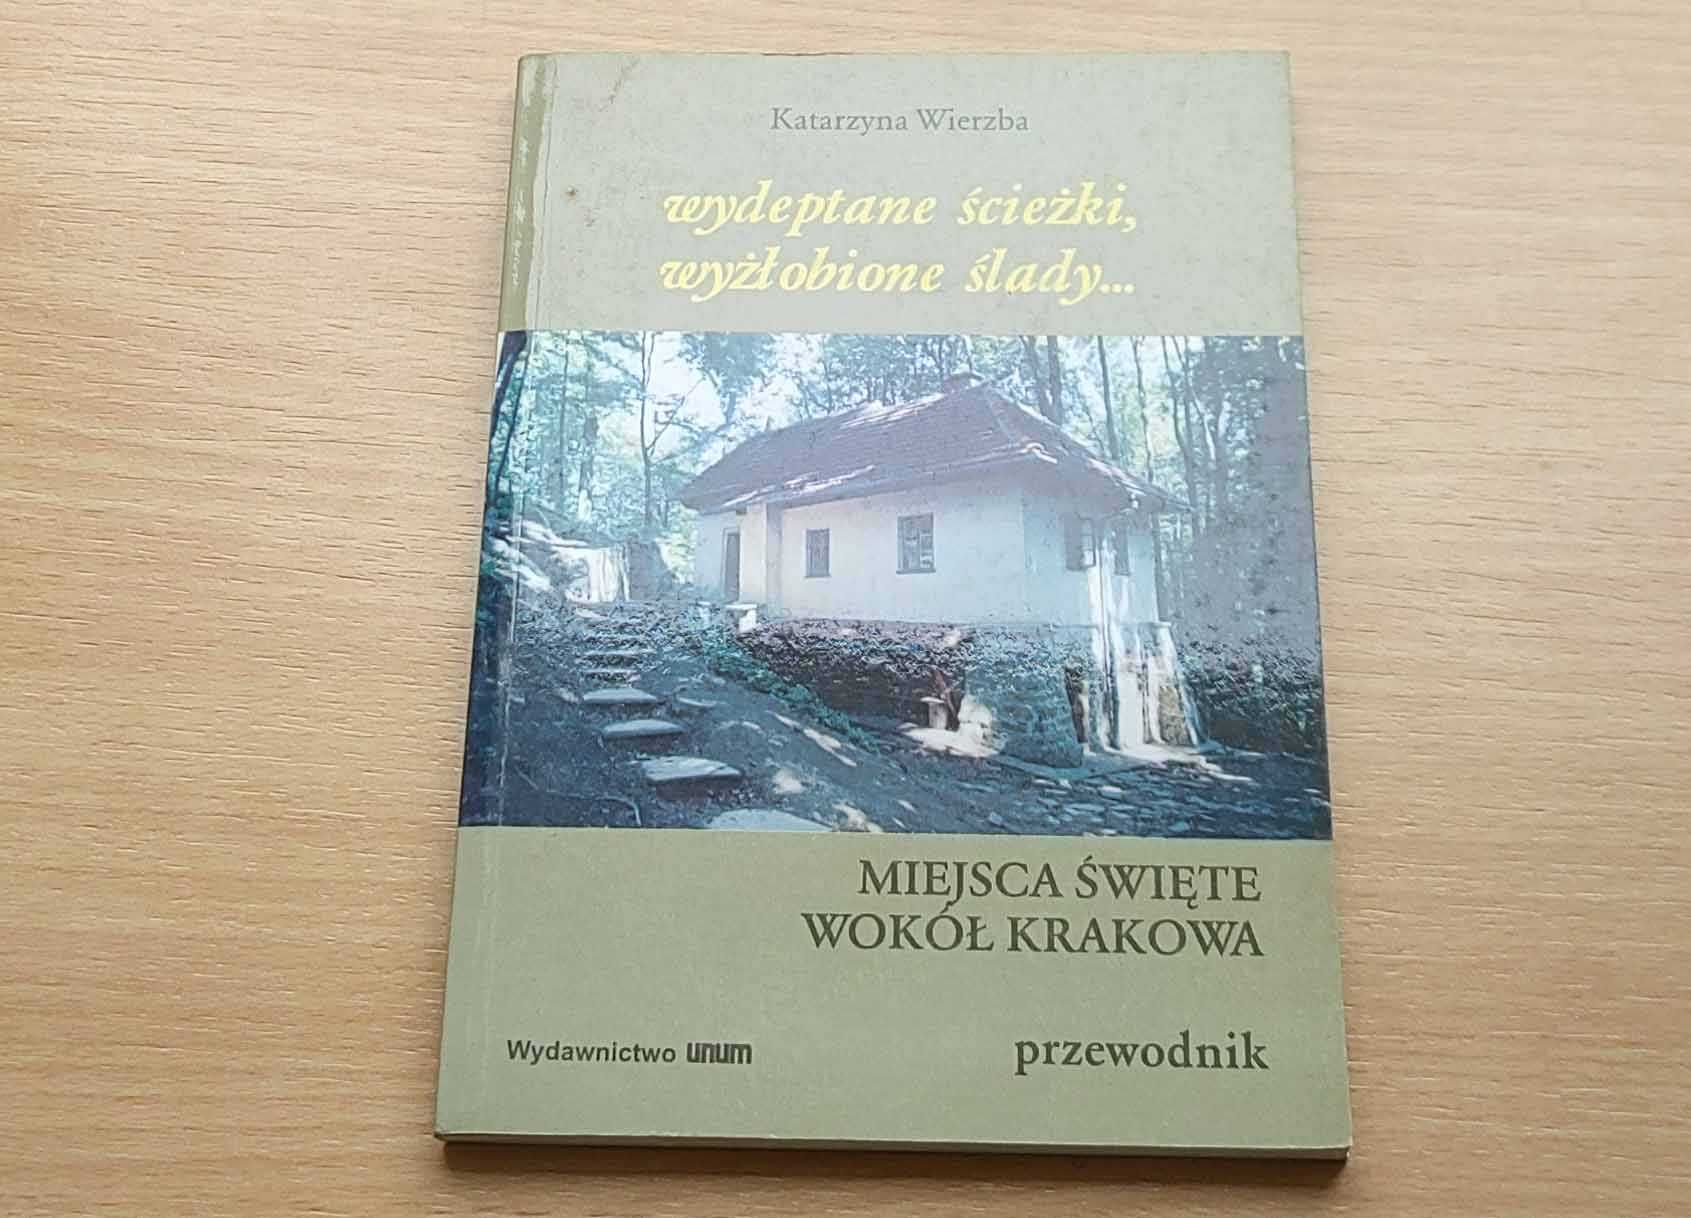 Wydeptane ścieżki, wyżłobione ślady ... - Katarzyna Wierzba - 2000